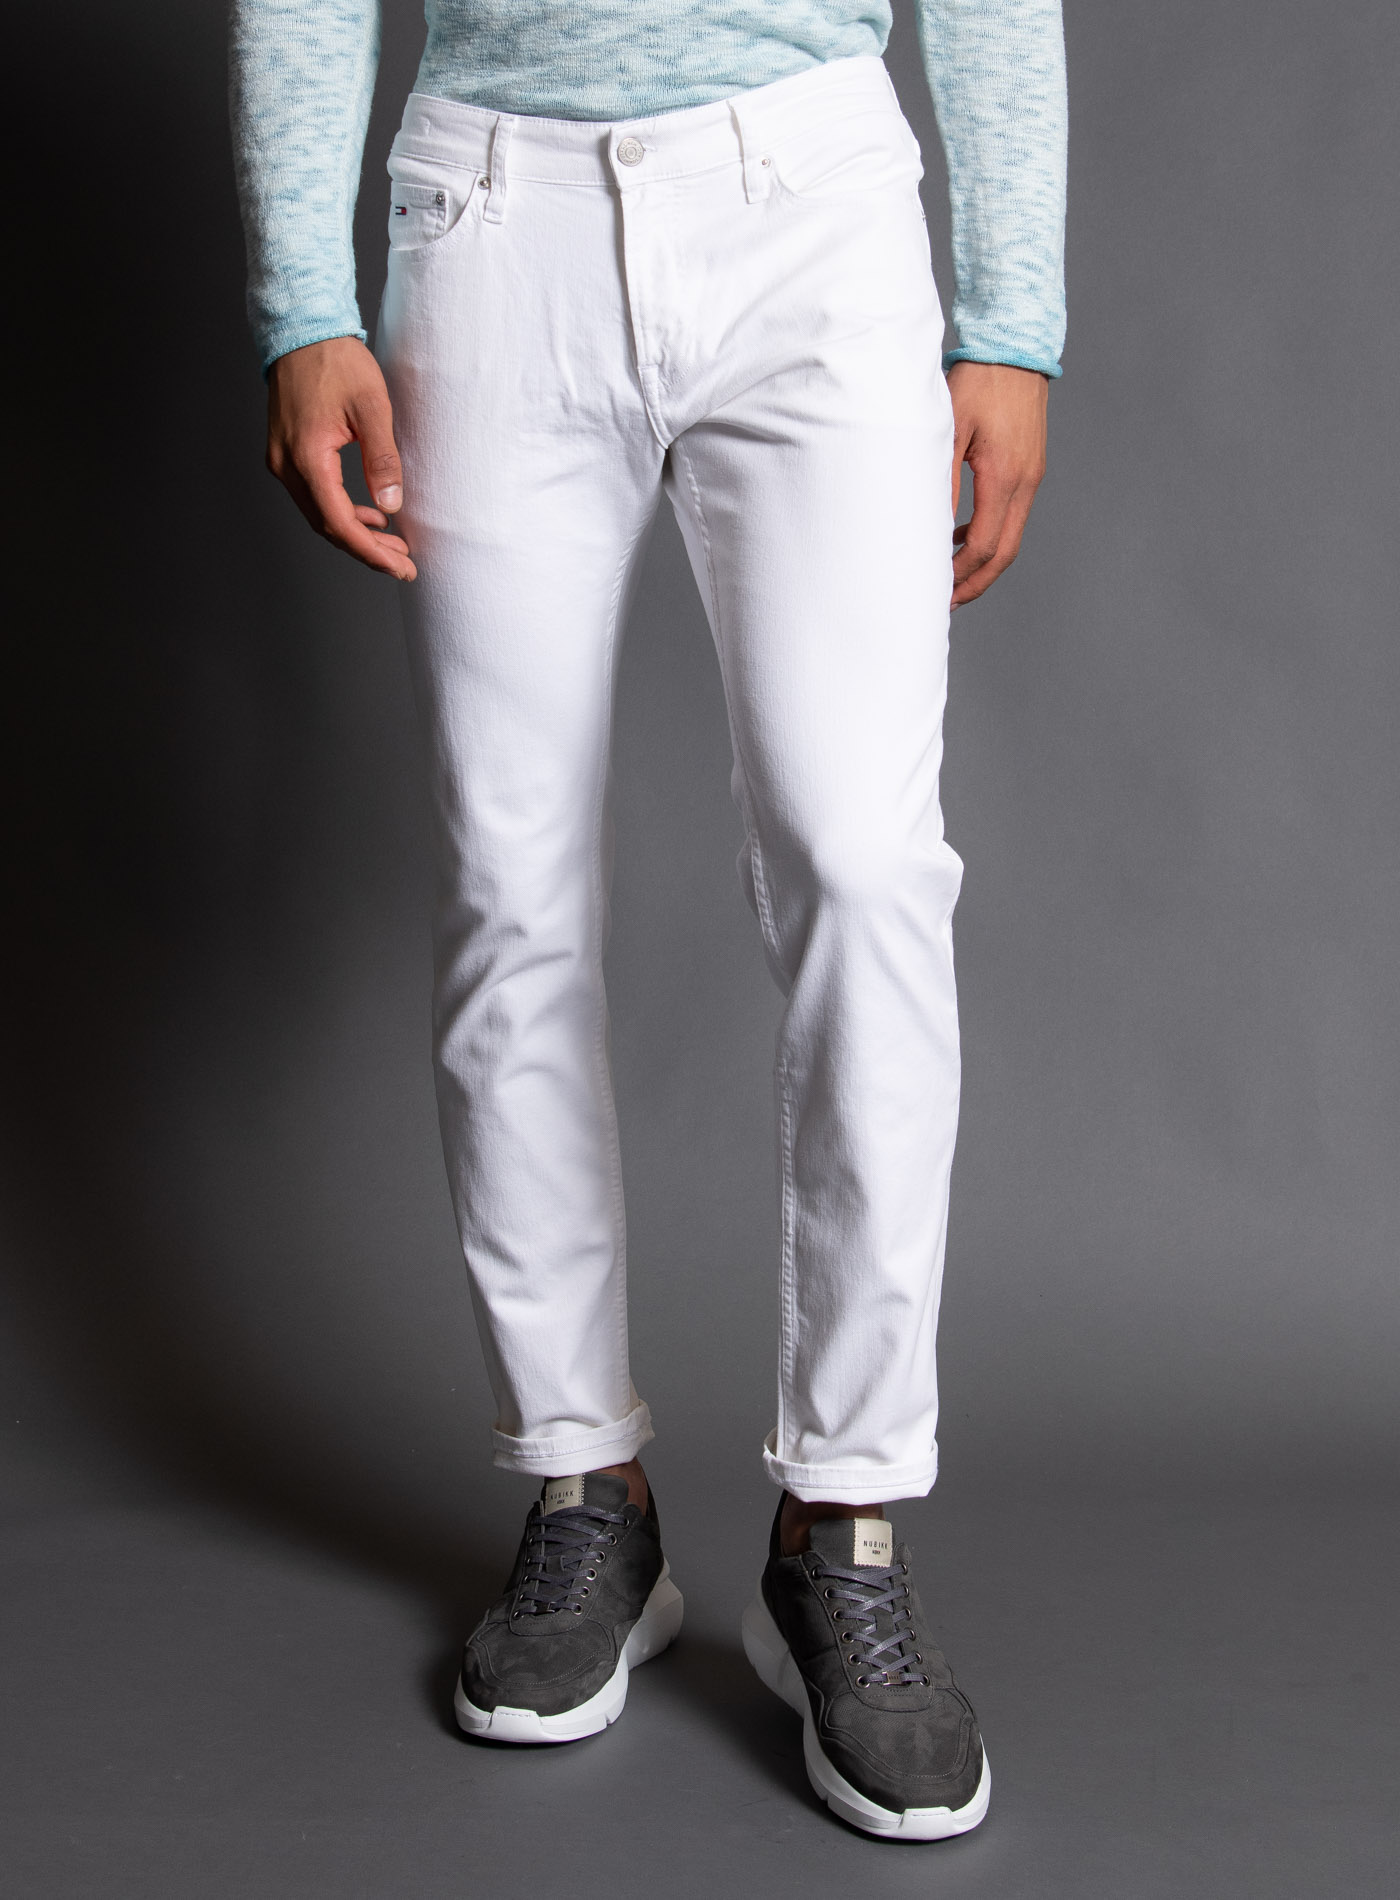 männer jeans in stylischen designs kaufen | wormland